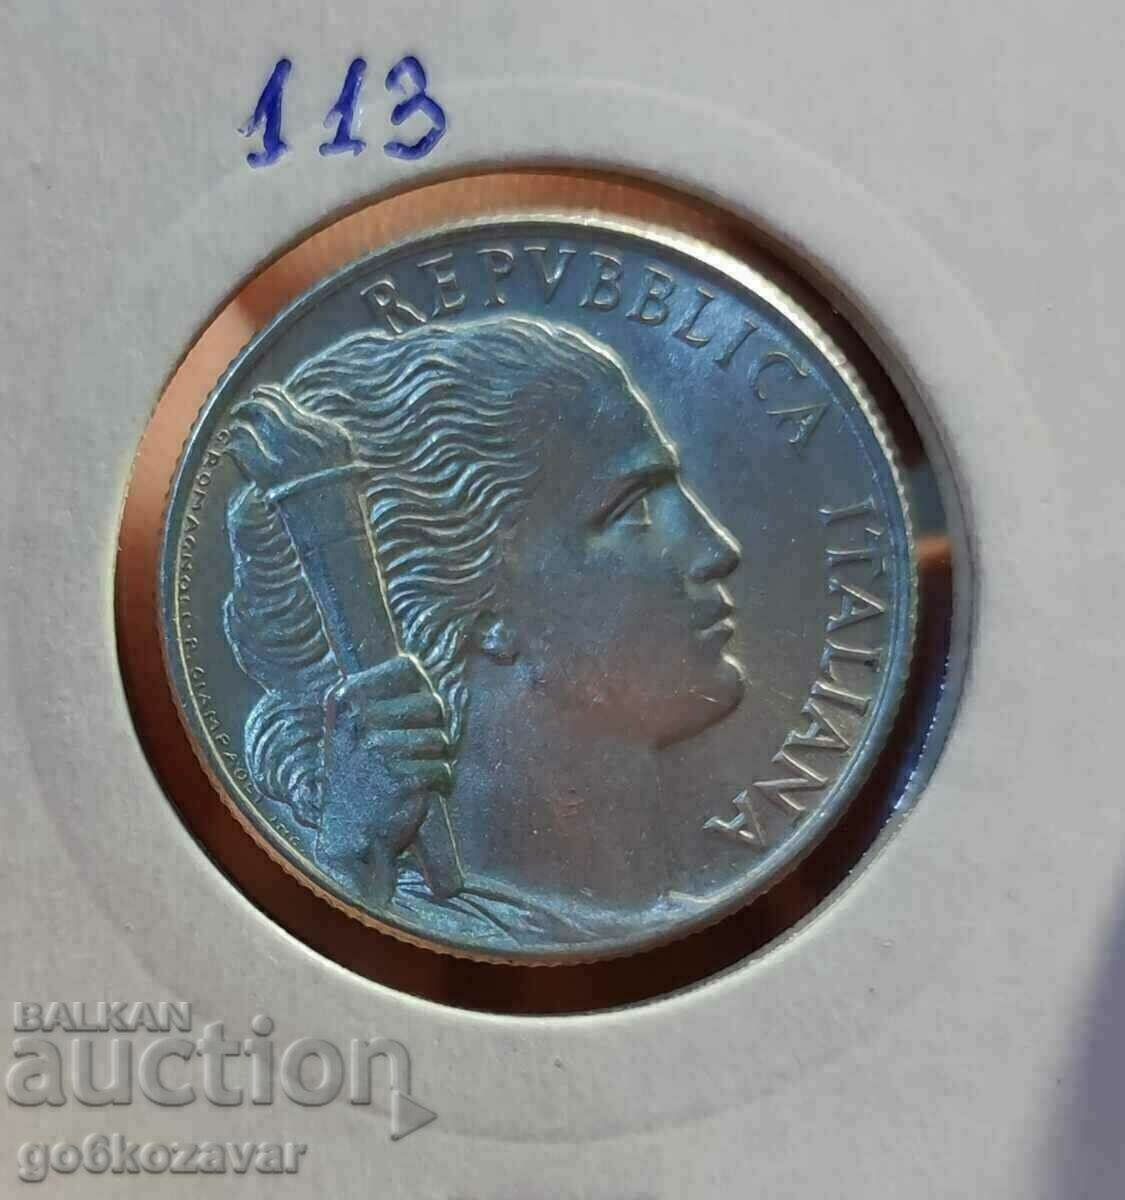 Italy 5 lira 1950 Top coin!